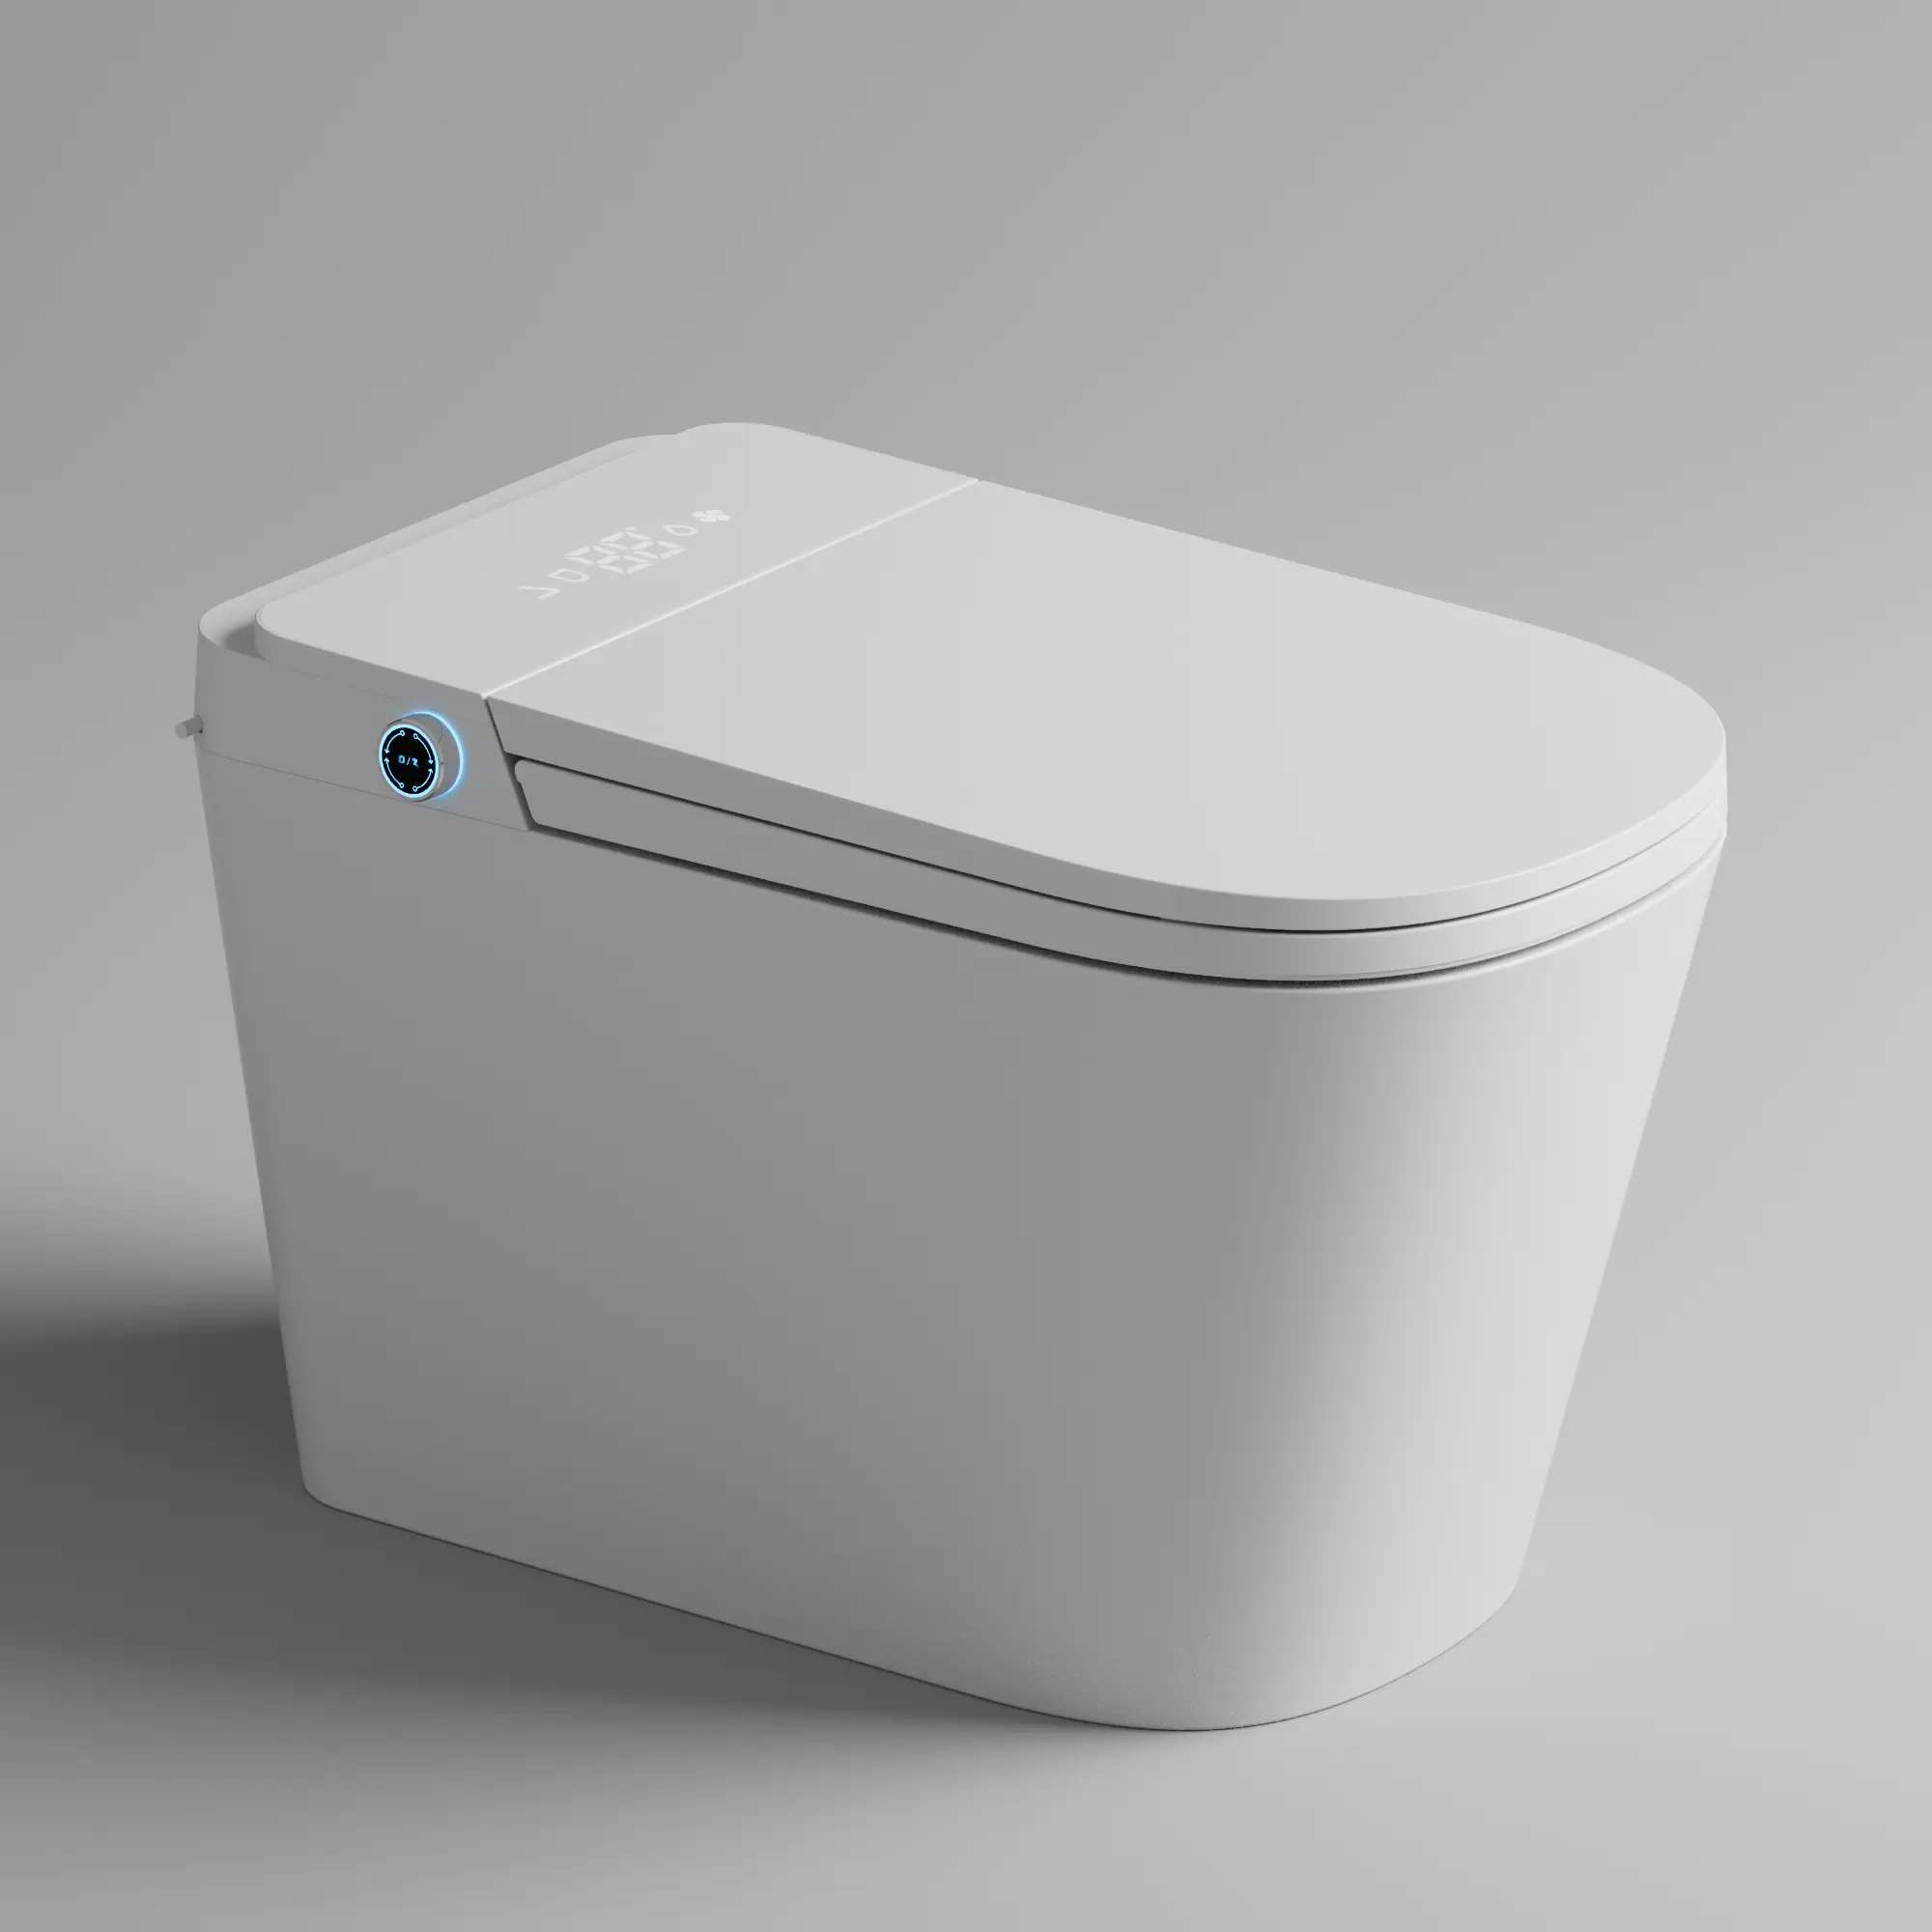 Sensor automático de descarga, baño eléctrico abierto, inodoro inteligente japonés de una pieza, inodoro, inodoro inteligente automático